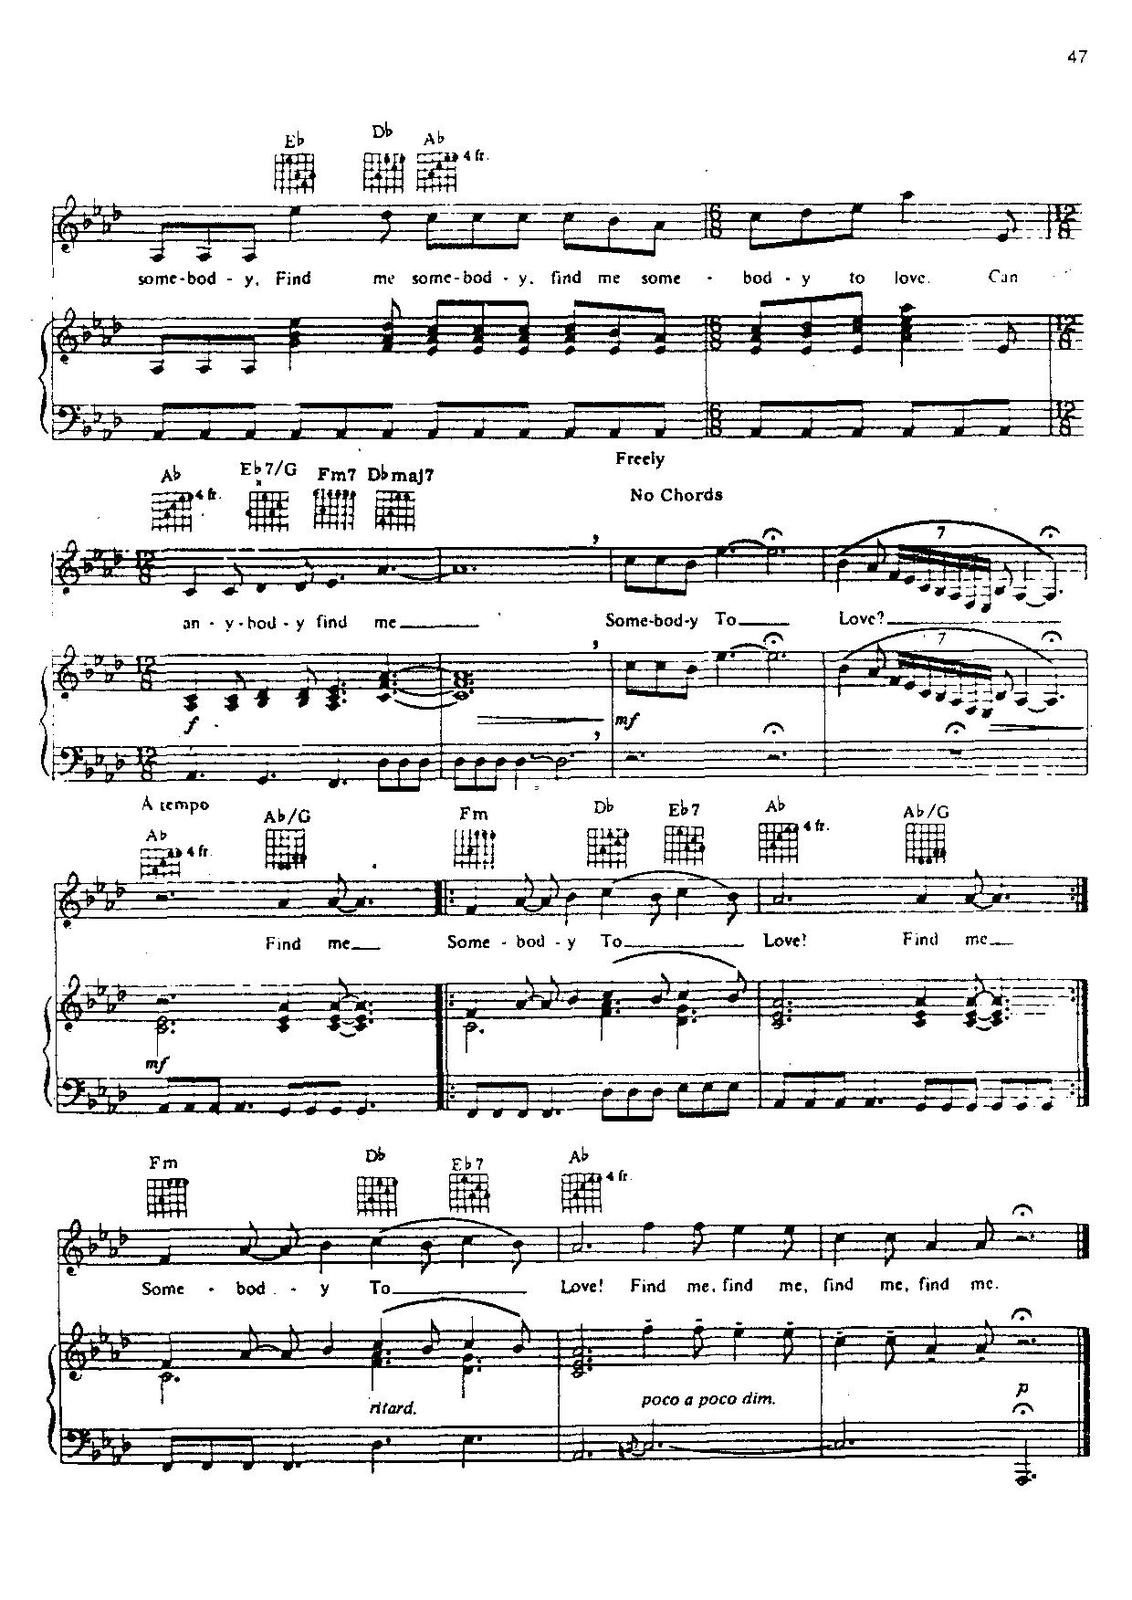 Partitura para Piano "Somebody To Love" | Queen Las Notas De Nana